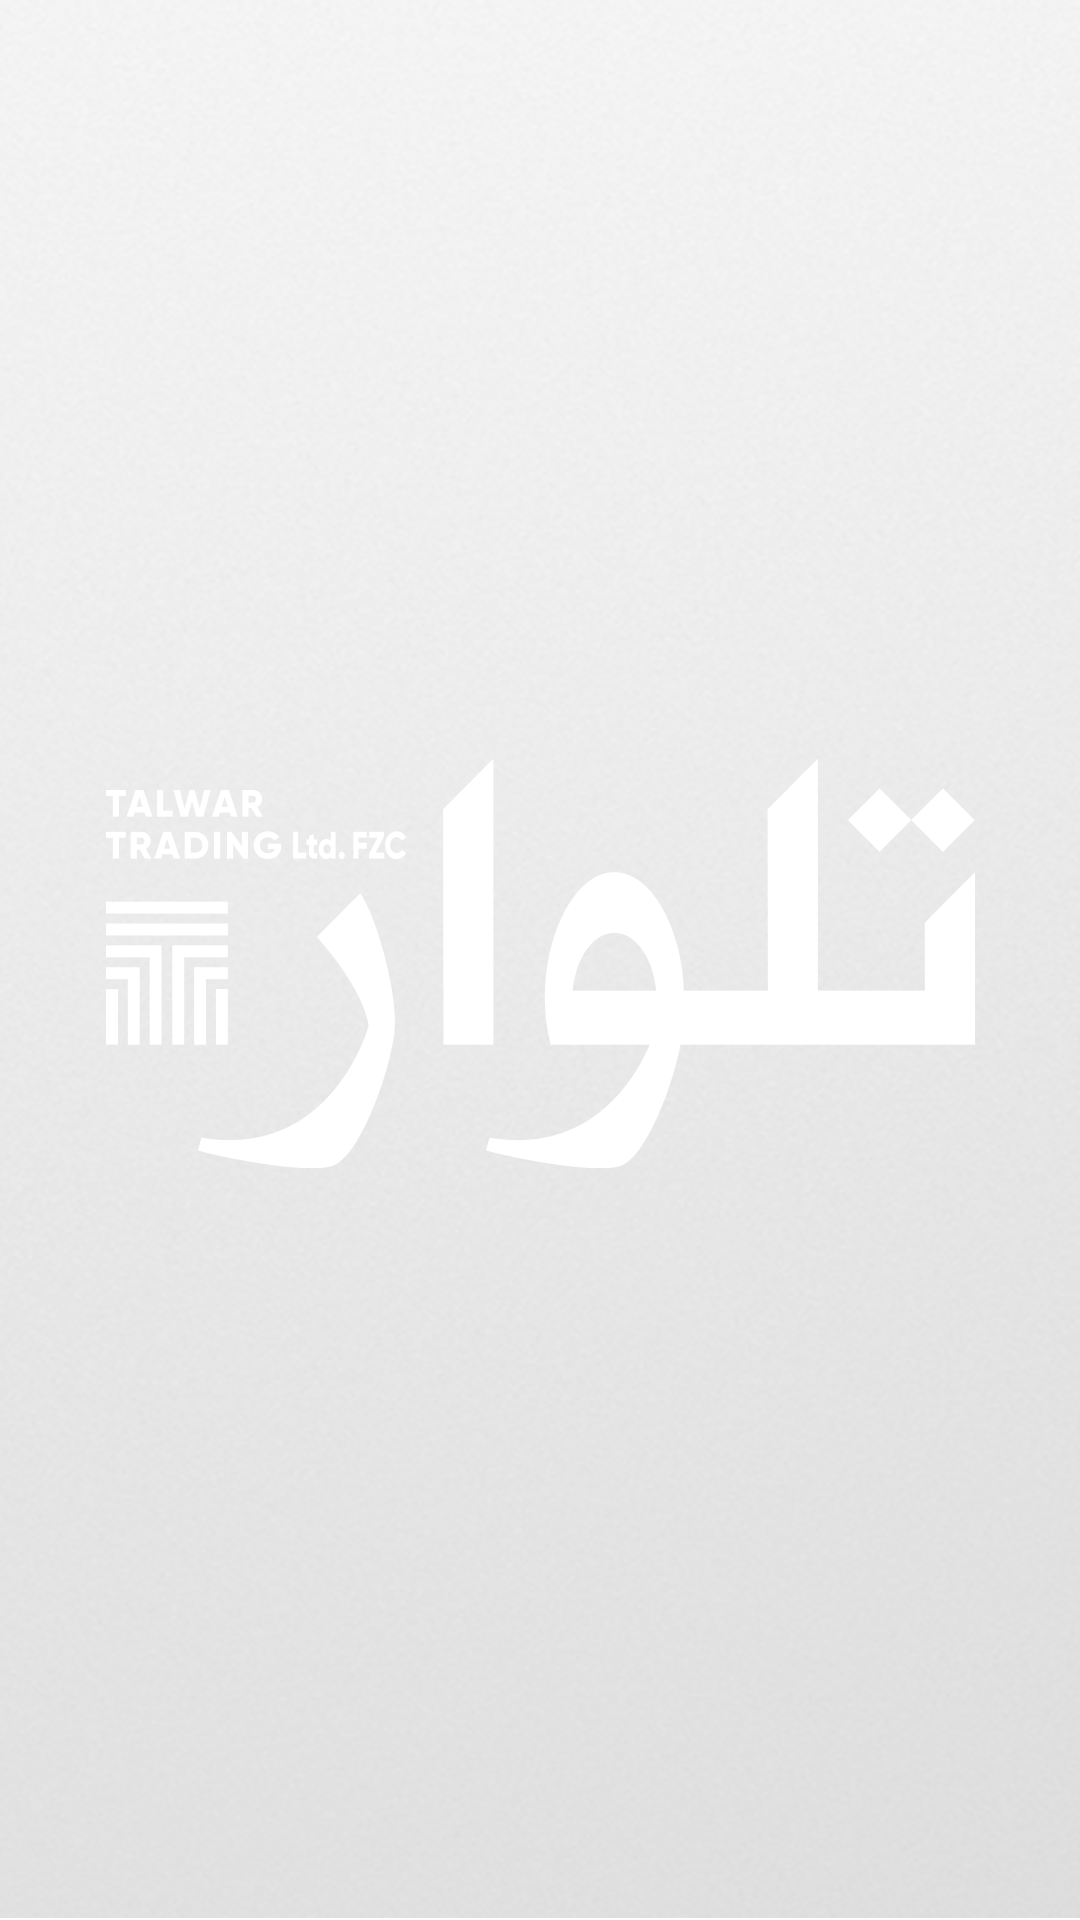 Talwar-hl